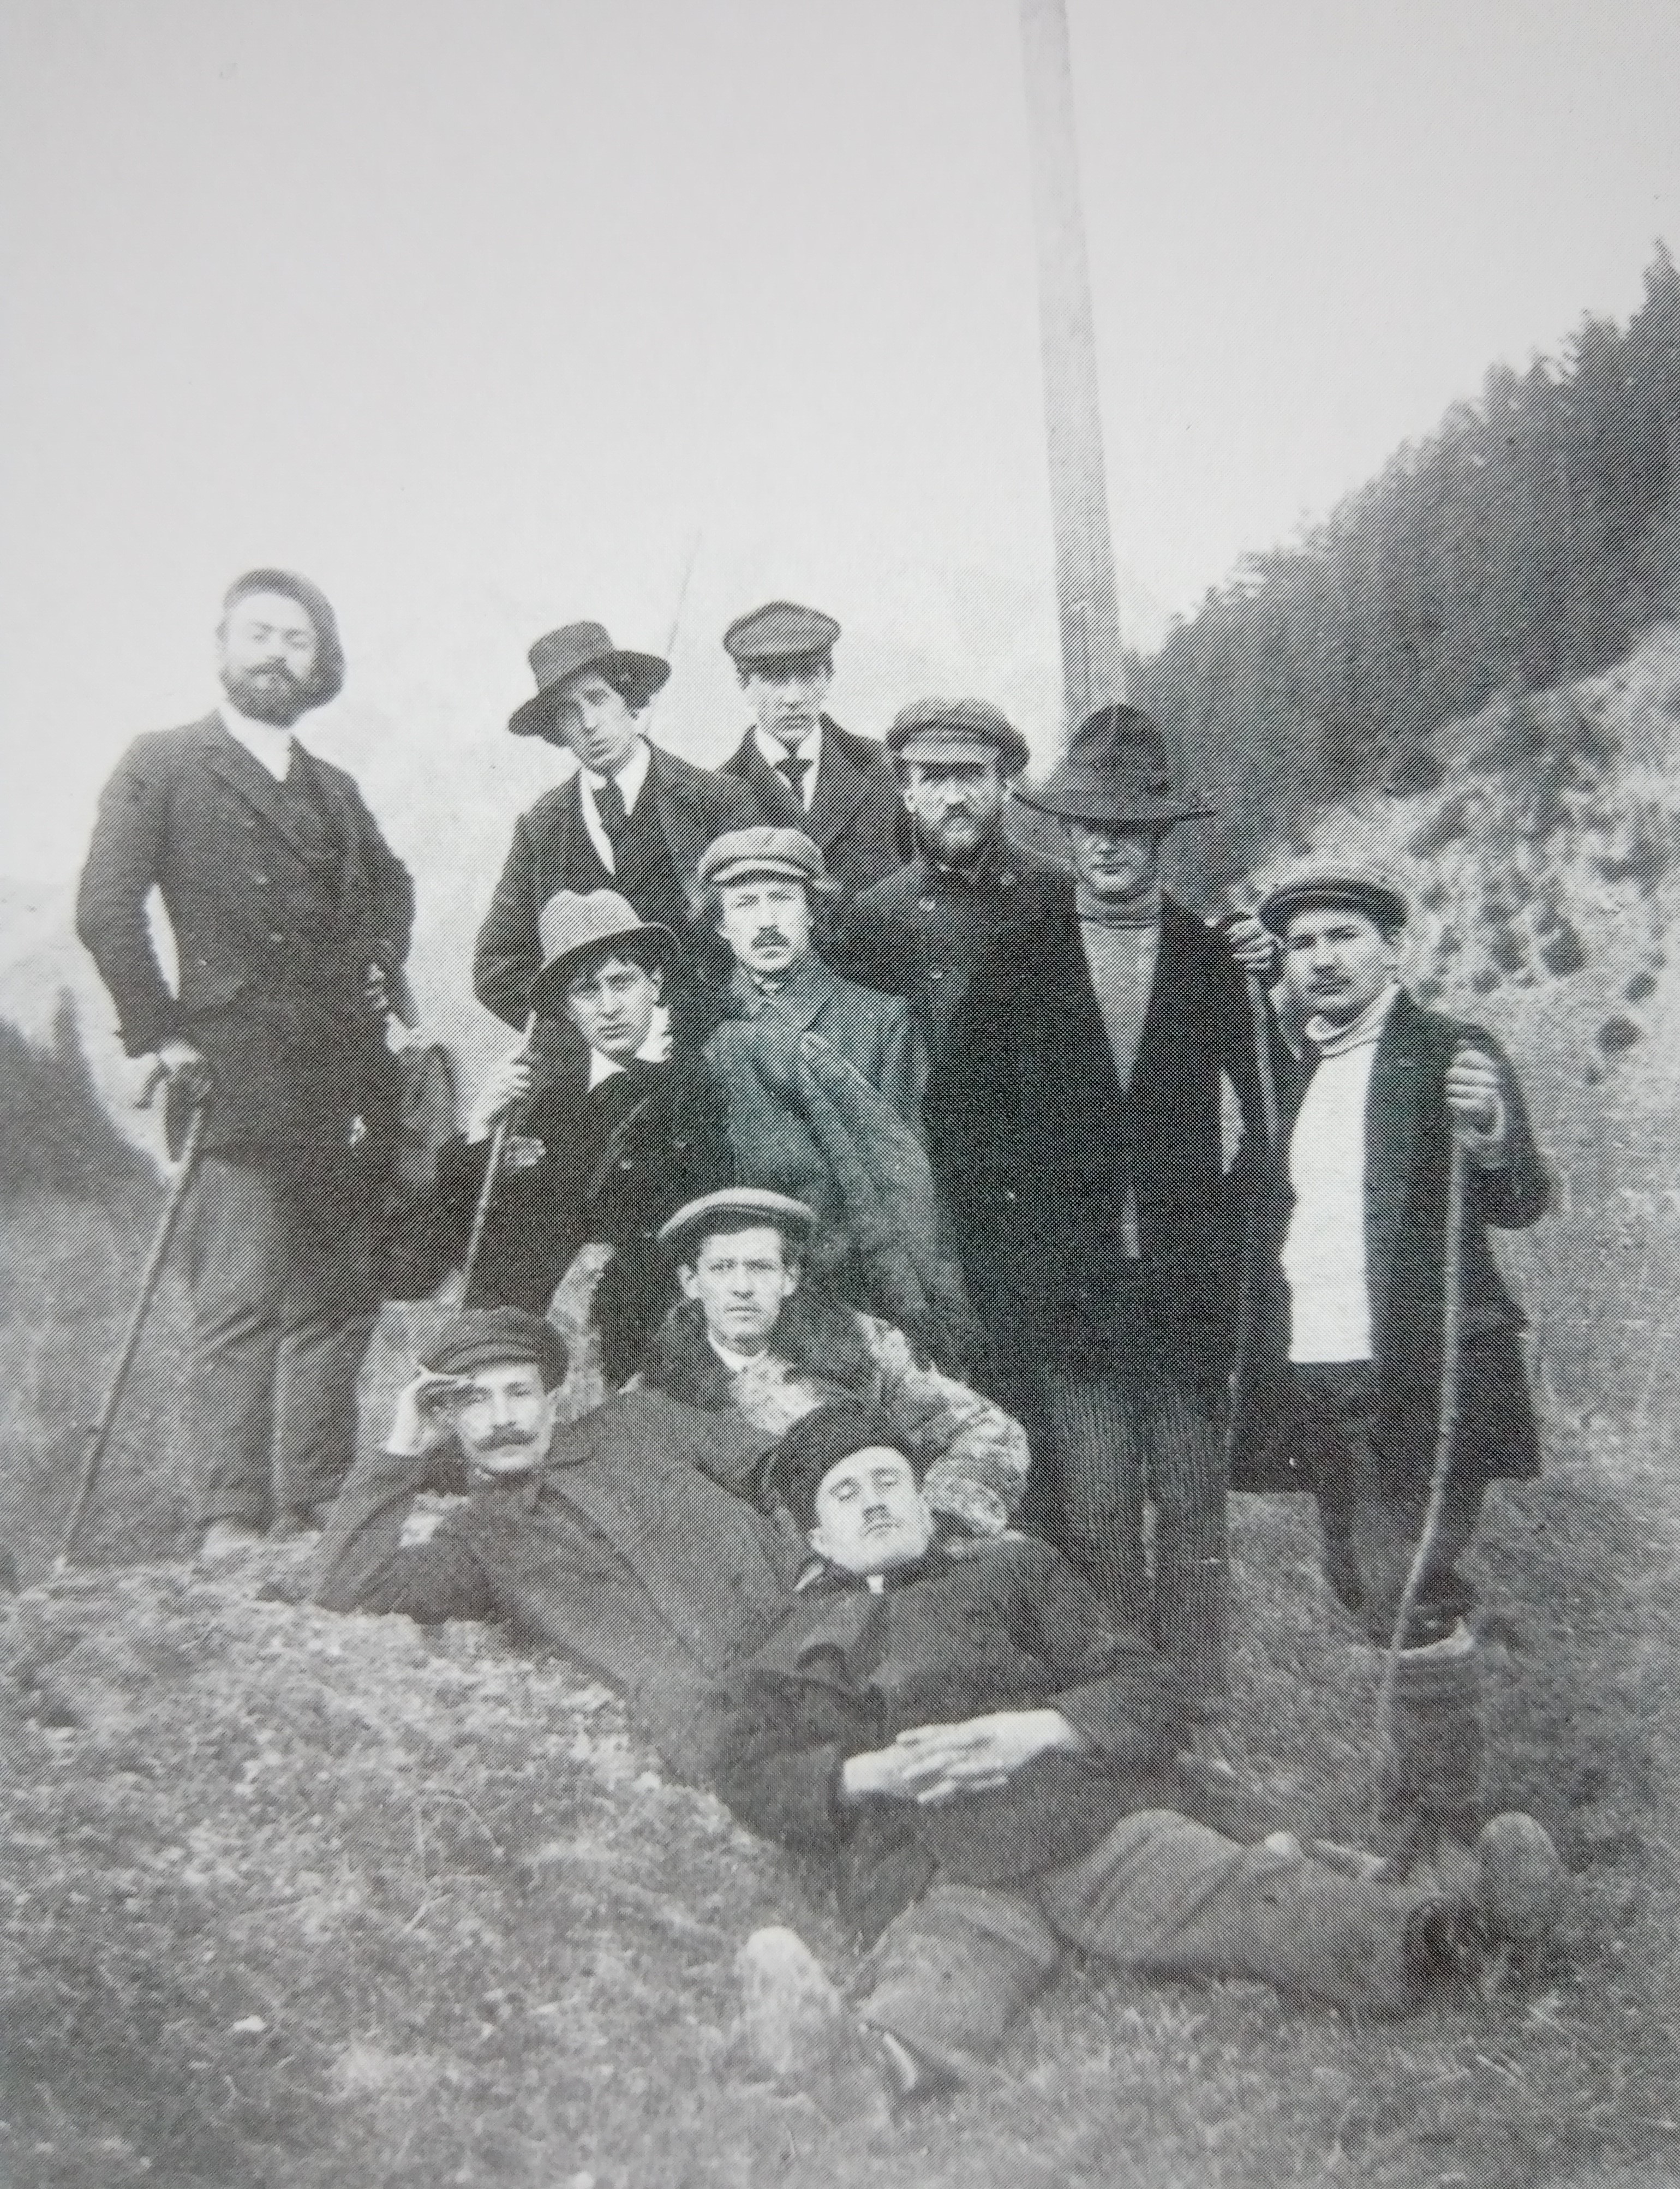 Wycieczka plenerowa studentów, Czorsztyn 1911 rok, fotografia archiwalna (Zawadowski pierwszy z lewej z laską, Hrynkowski drugi z prawej w kapeluszu, Mondzain pierwszy z prawej)